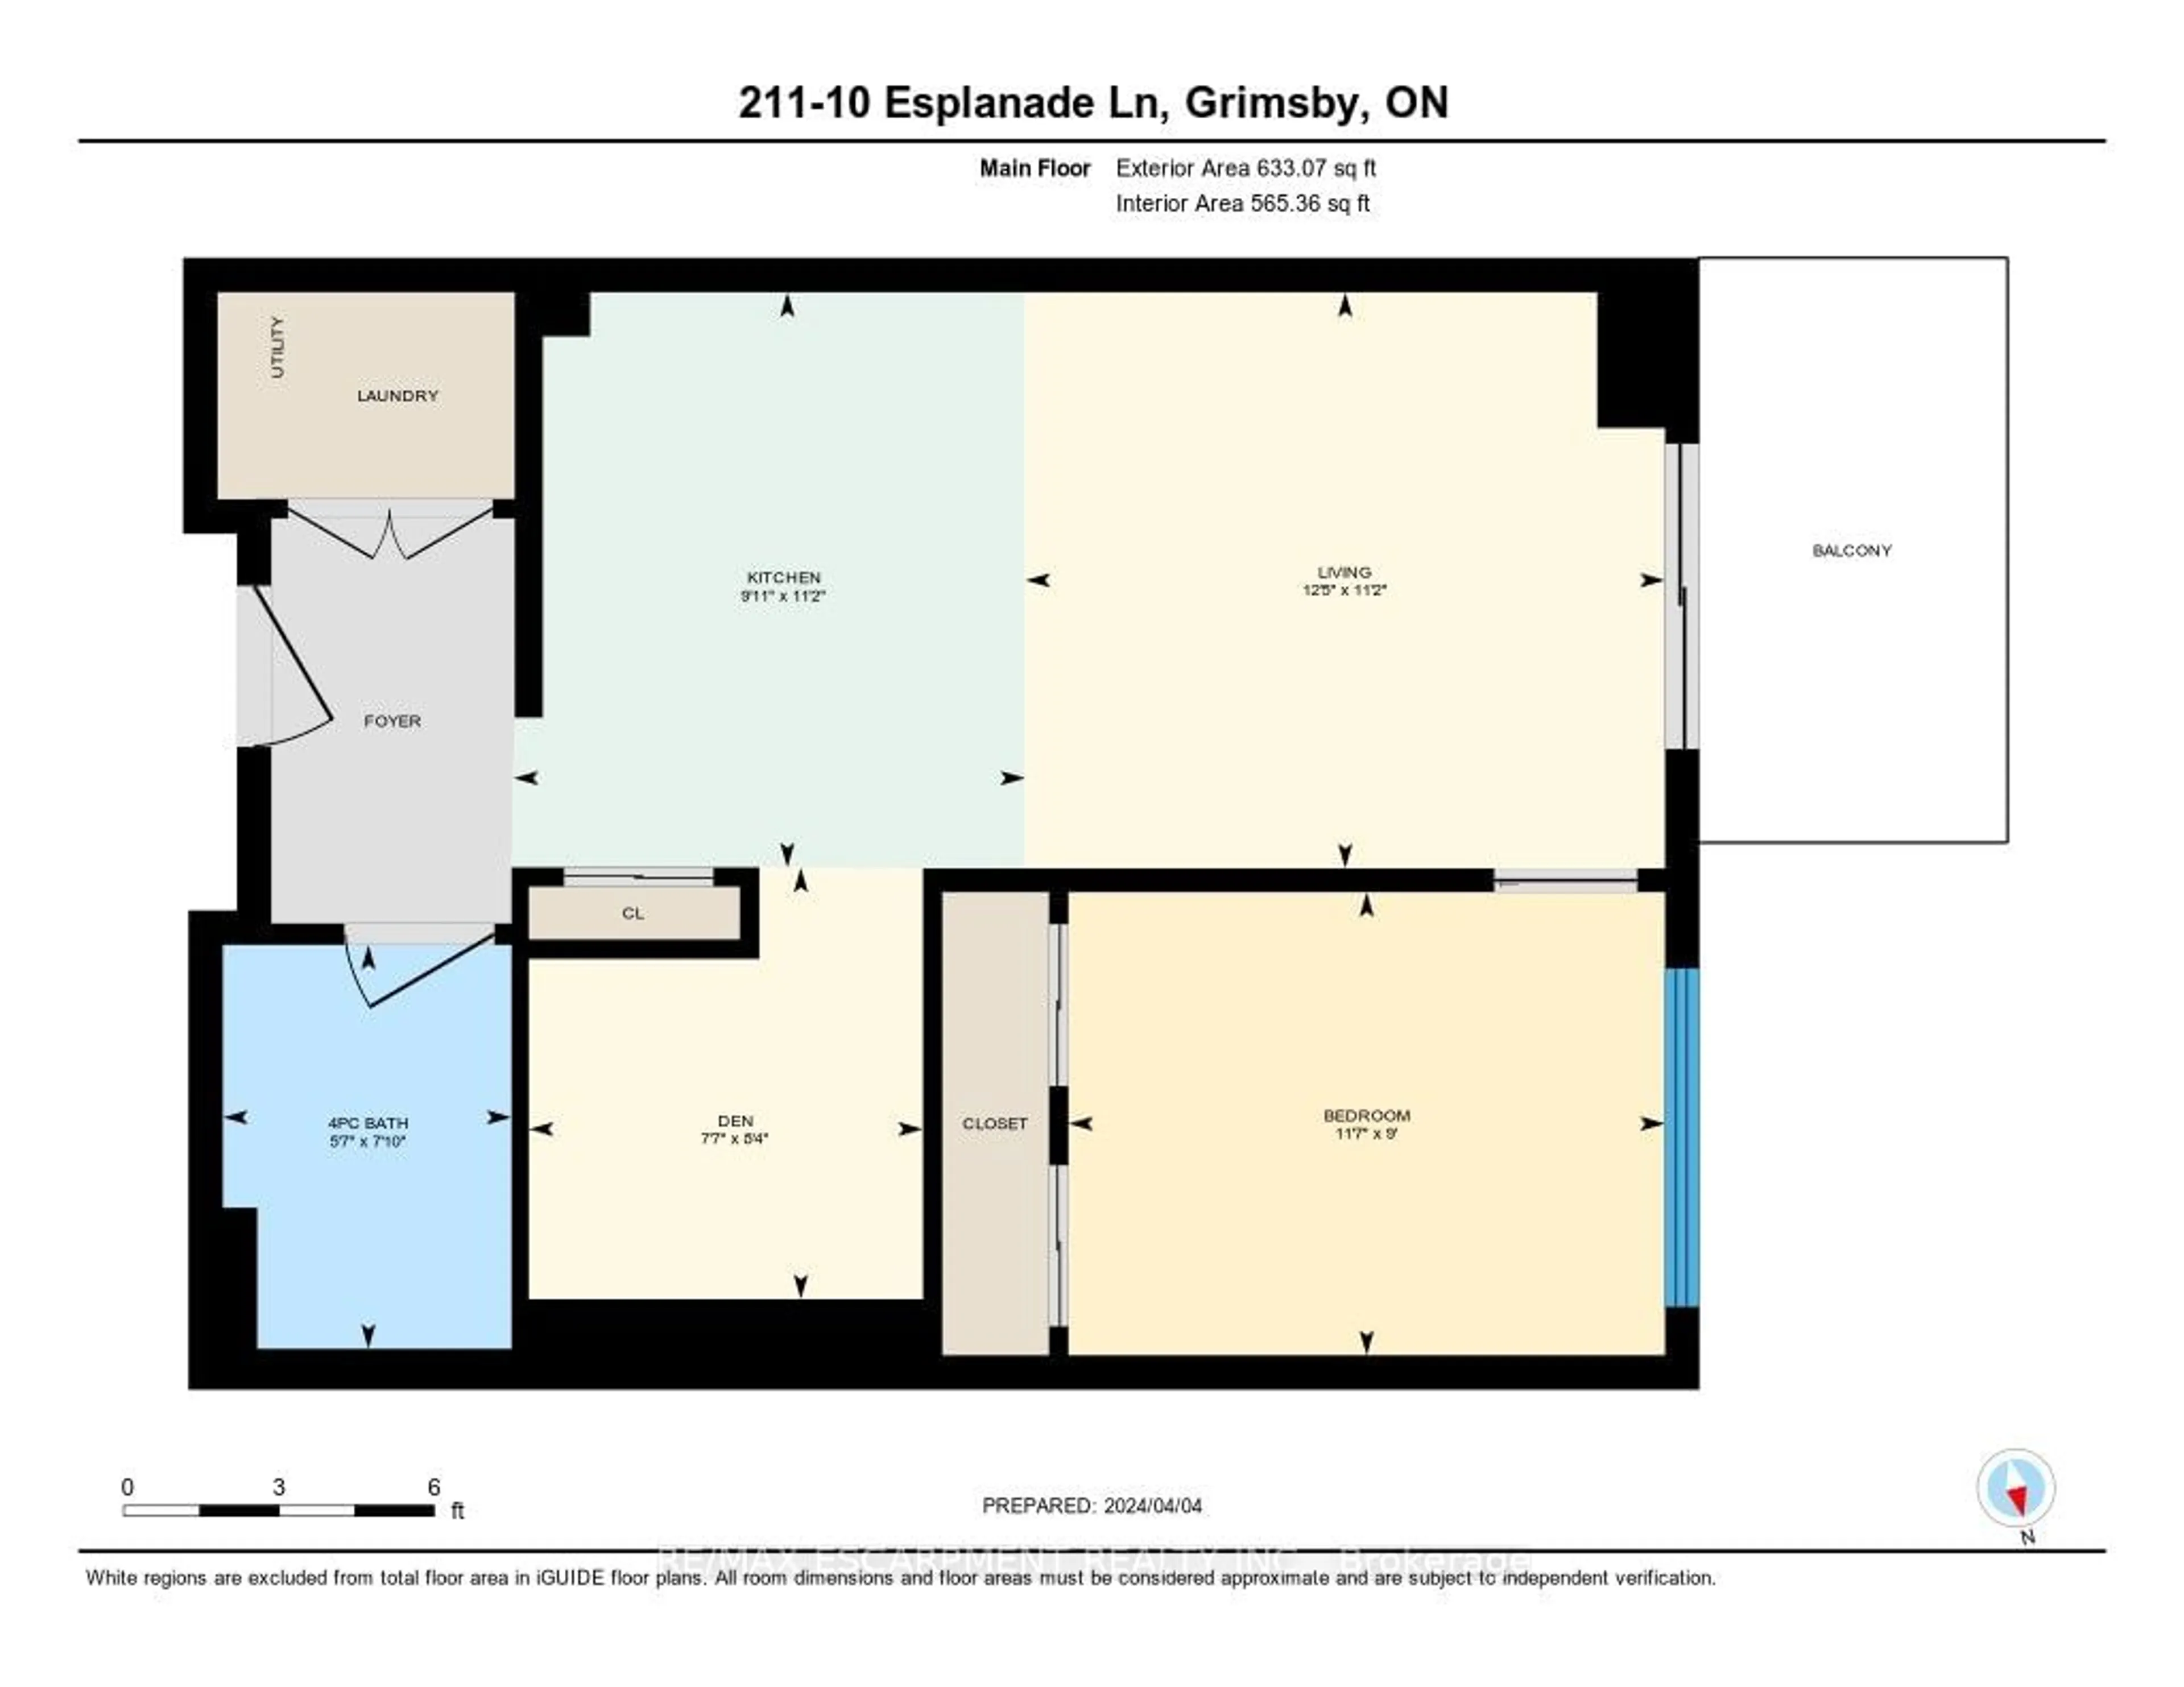 Floor plan for 10 Esplanade Lane #211, Grimsby Ontario L3M 0H1